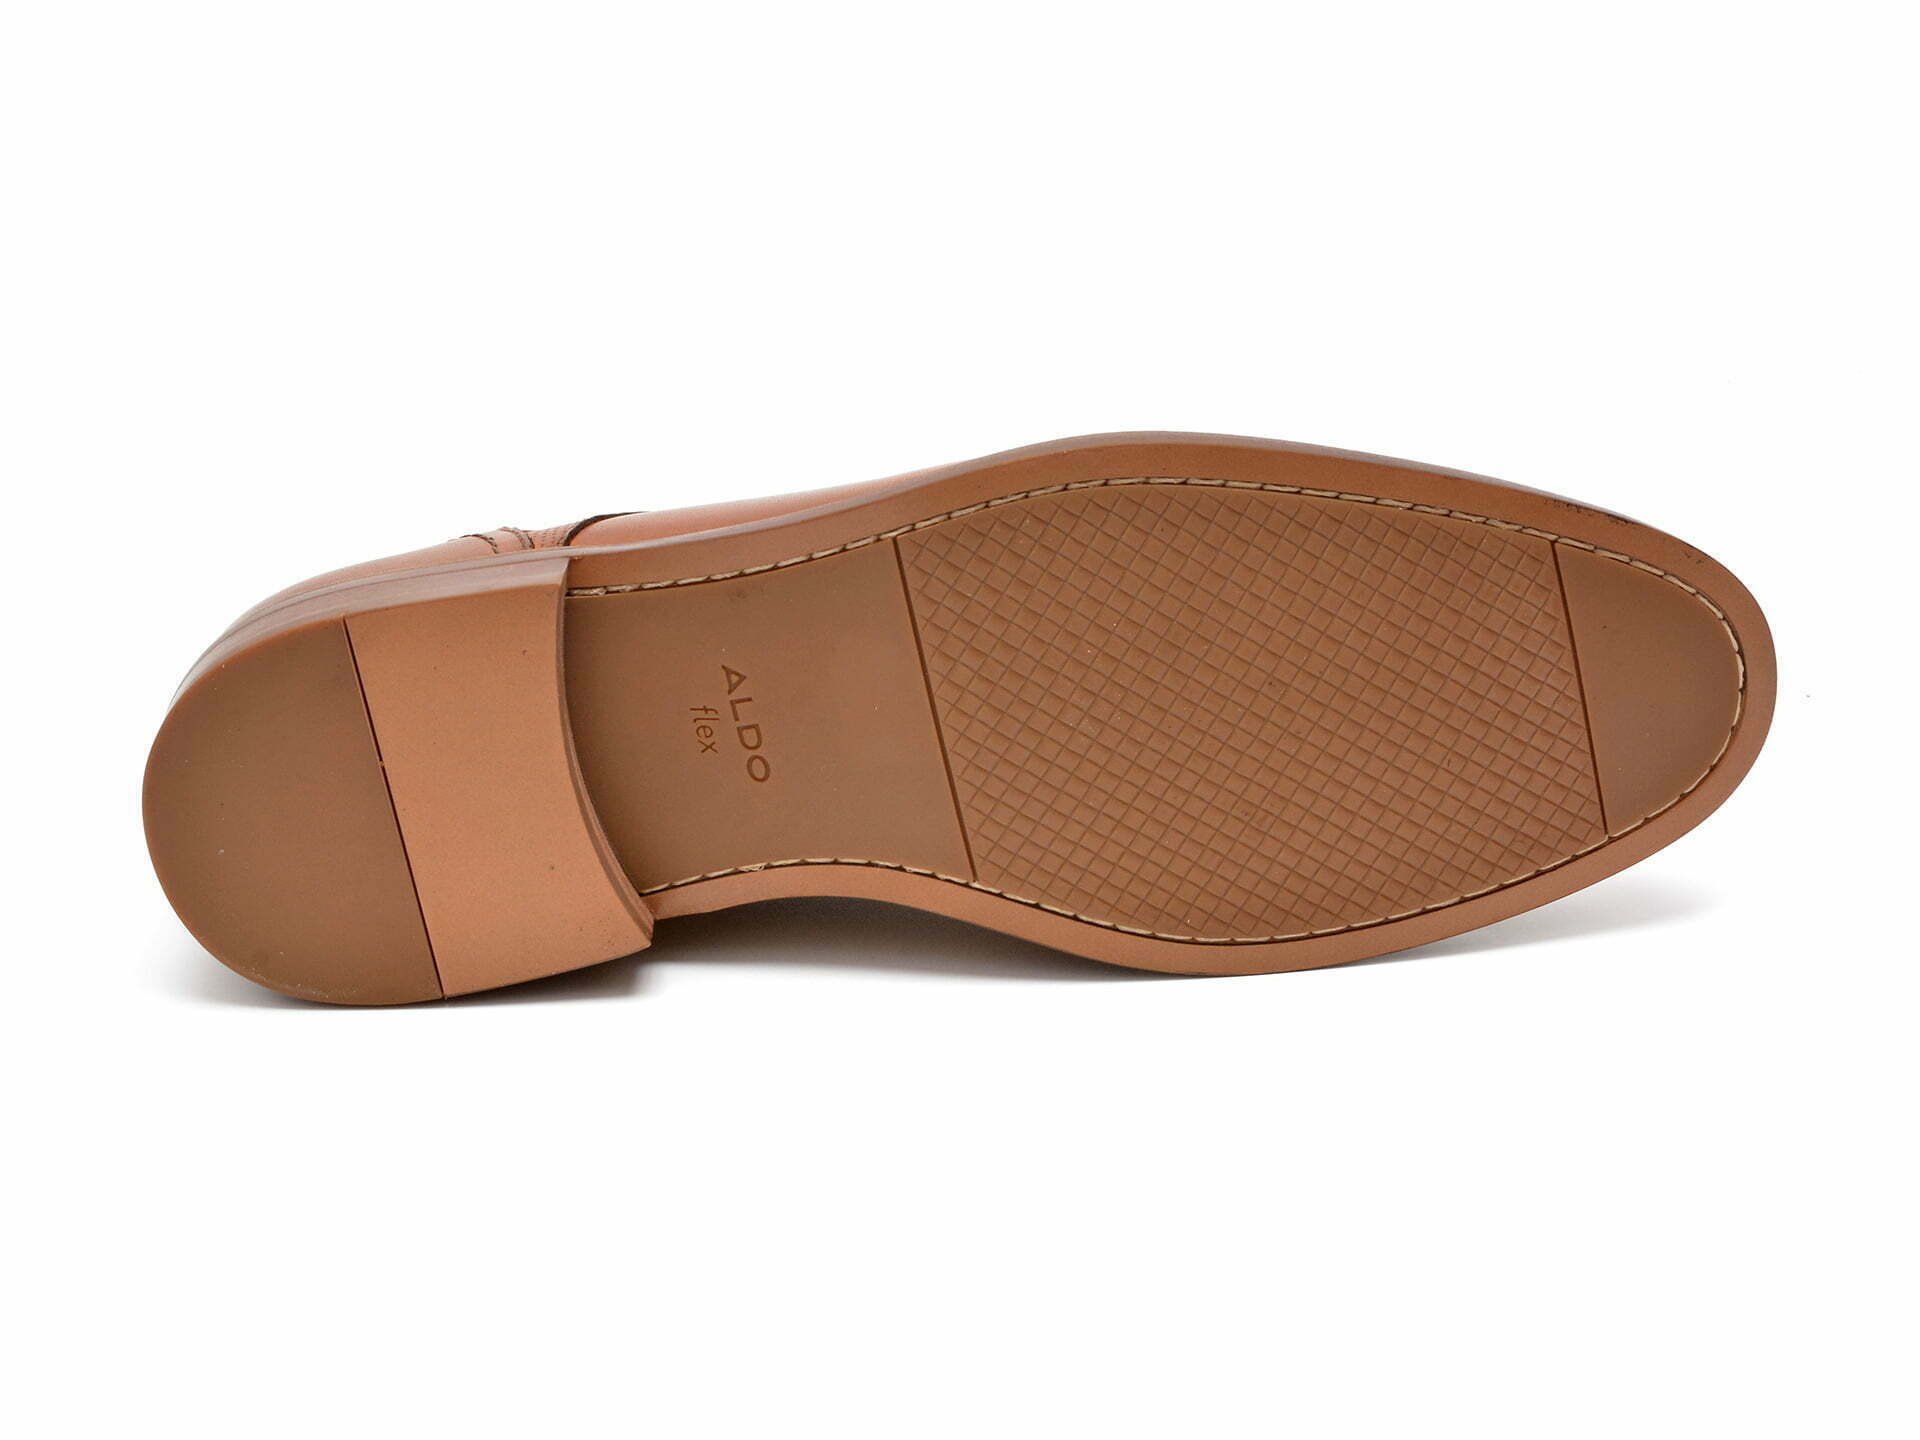 Comandă Încălțăminte Damă, la Reducere  Pantofi ALDO maro, LOBSTERFLEX230, din piele naturala Branduri de top ✓